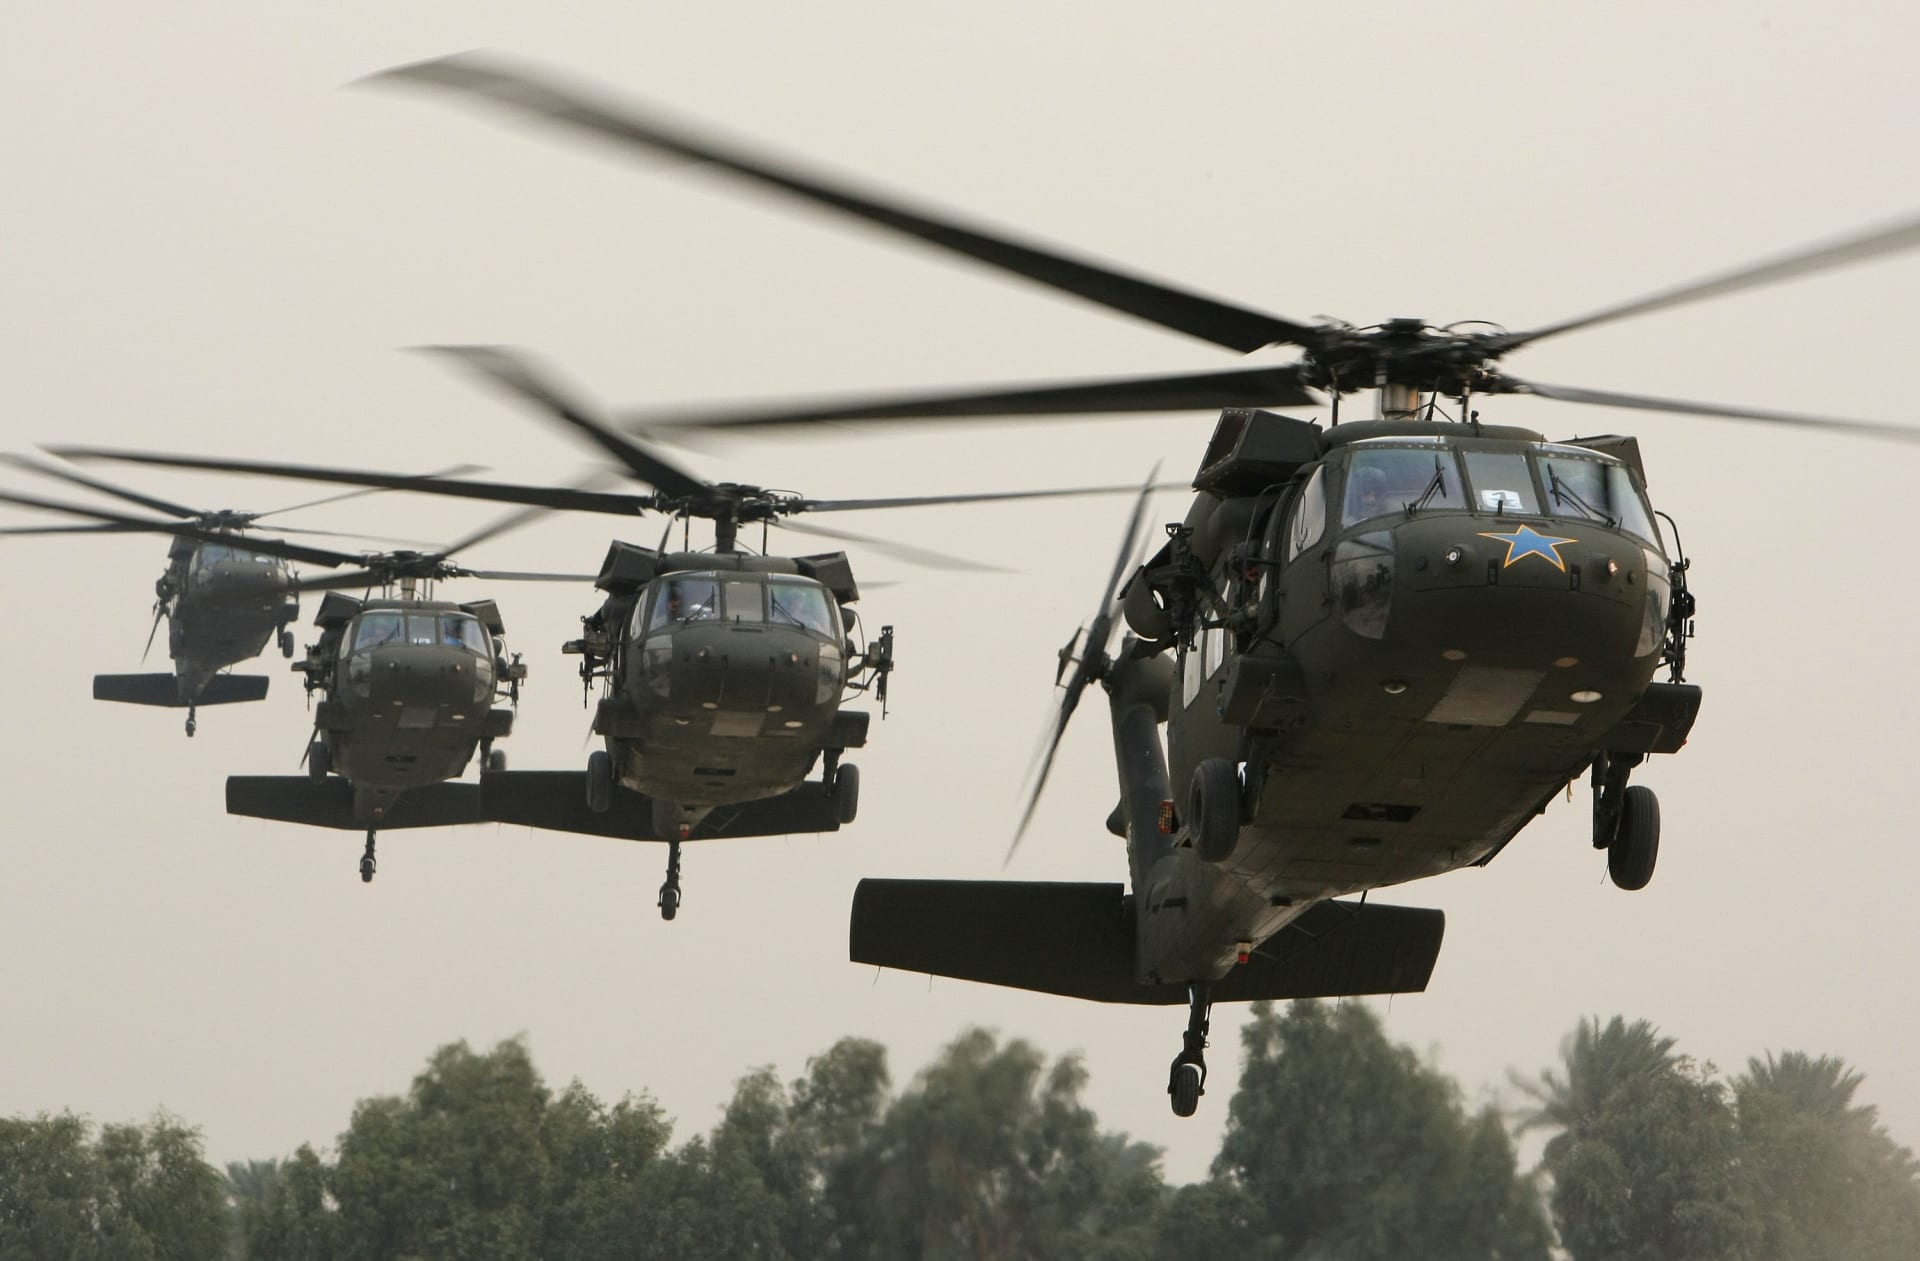 البنتاغون: شركة "لوكهيد مارتن" تفوز بصفقة طائرات هليكوبتر للسعودية بـ3.8 مليار دولار